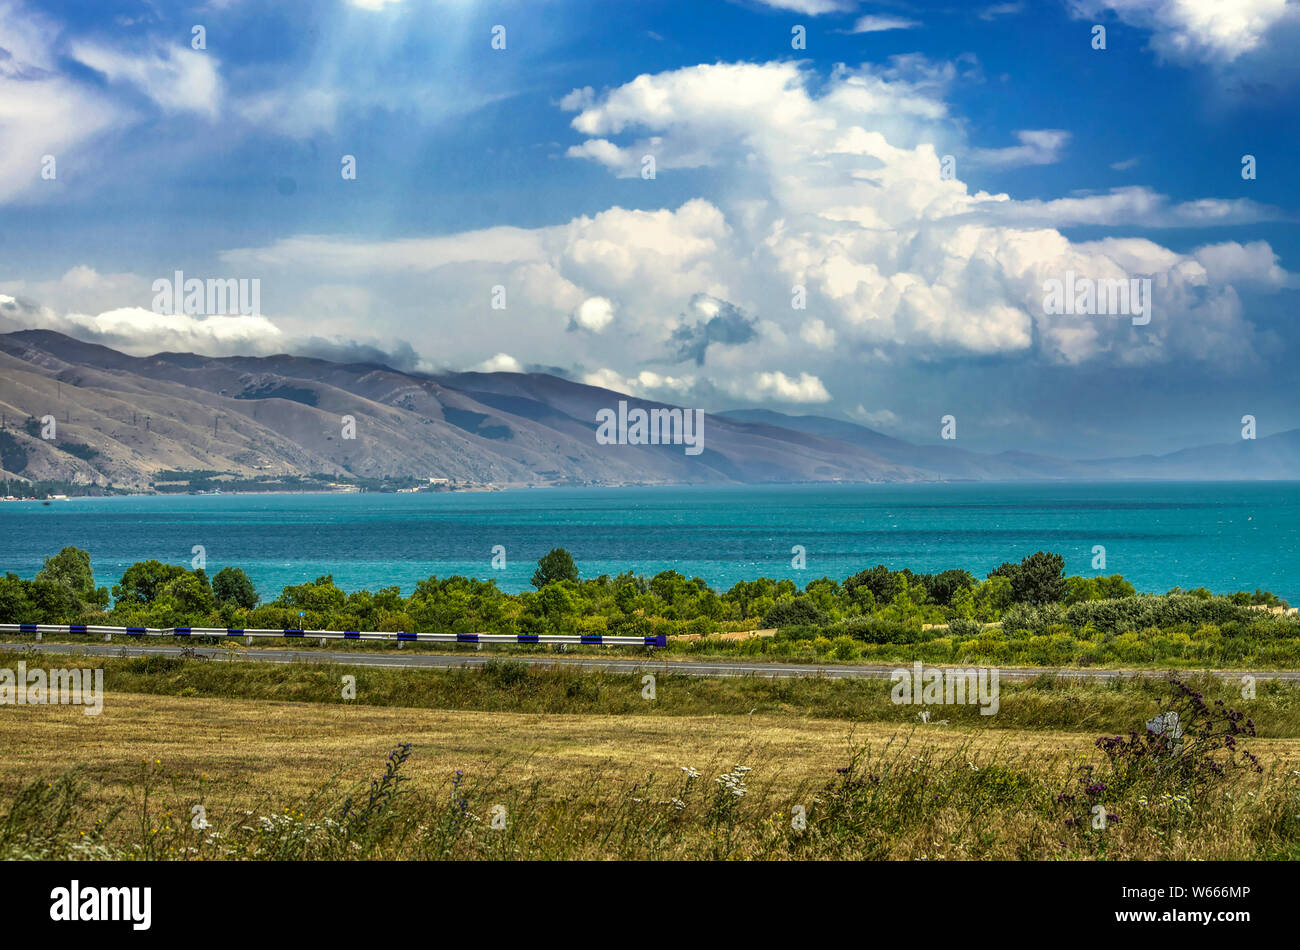 El lago Sevan de alta montaña, rodeado por las montañas de Geghama, está cubierto con nubes gruesas vista desde la carretera pasando a lo largo de la costa Foto de stock